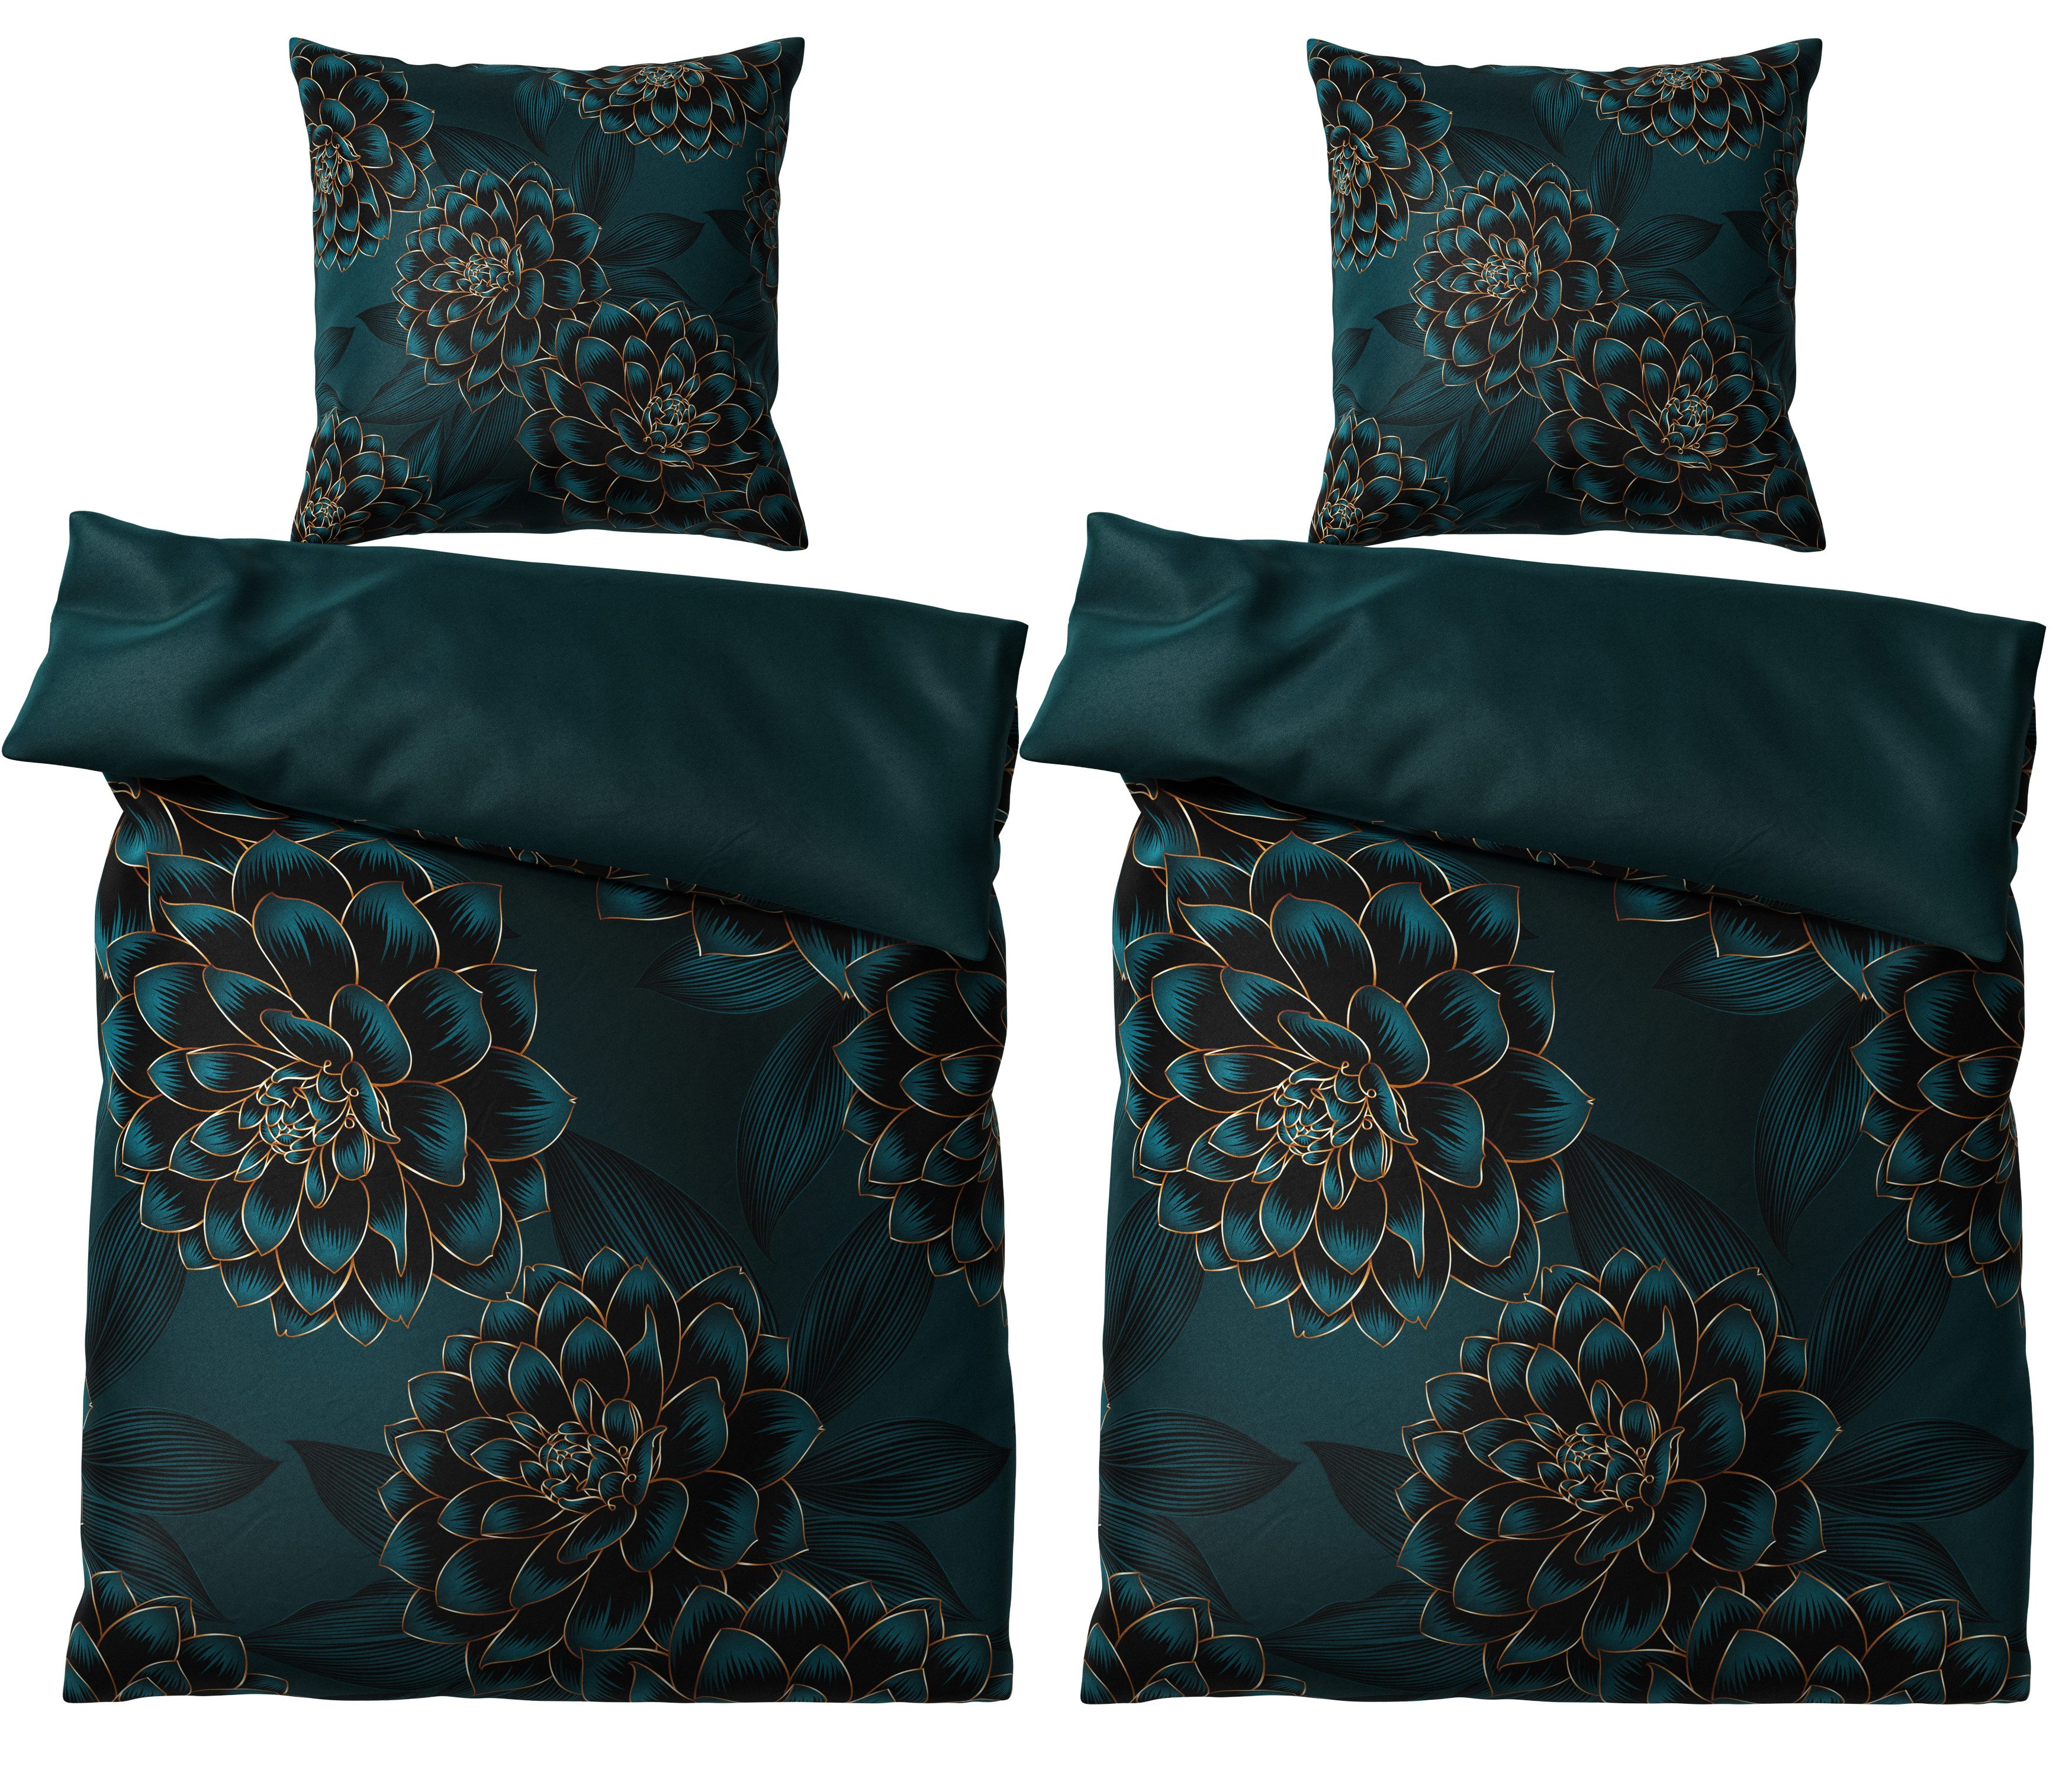 Bettwäsche Dahlien 135x200 cm, Bettbezug und Kissenbezug, Sanilo, Baumwolle, 4 teilig, mit Reißverschluss